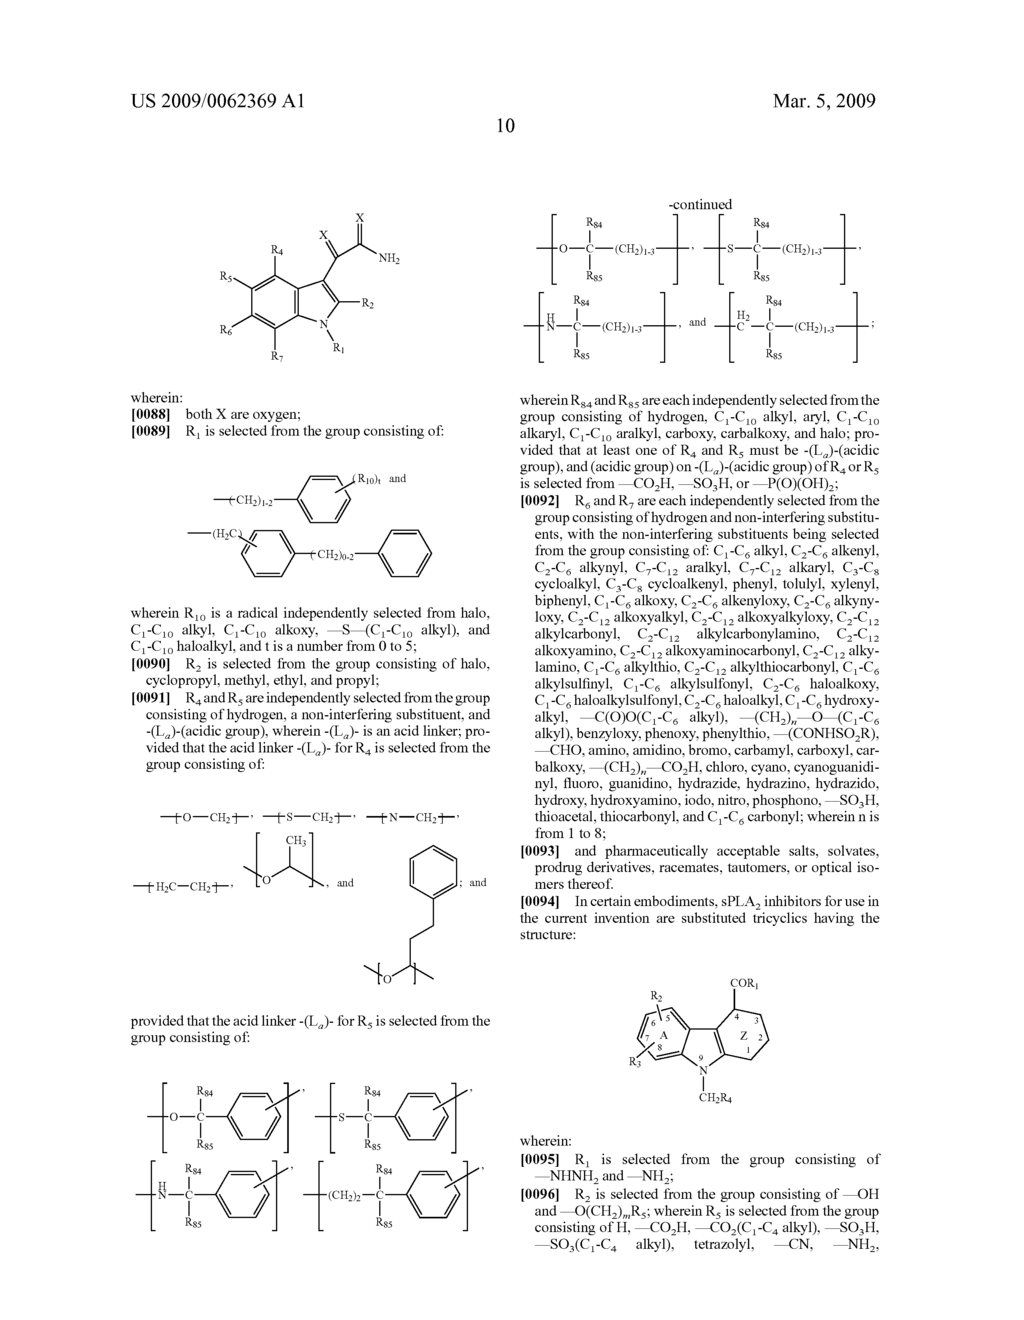 USE OF SECRETORY PHOSPHOLIPASE A2 (SPLA2) INHIBITORS TO DECREASE SPLA2 LEVELS - diagram, schematic, and image 29